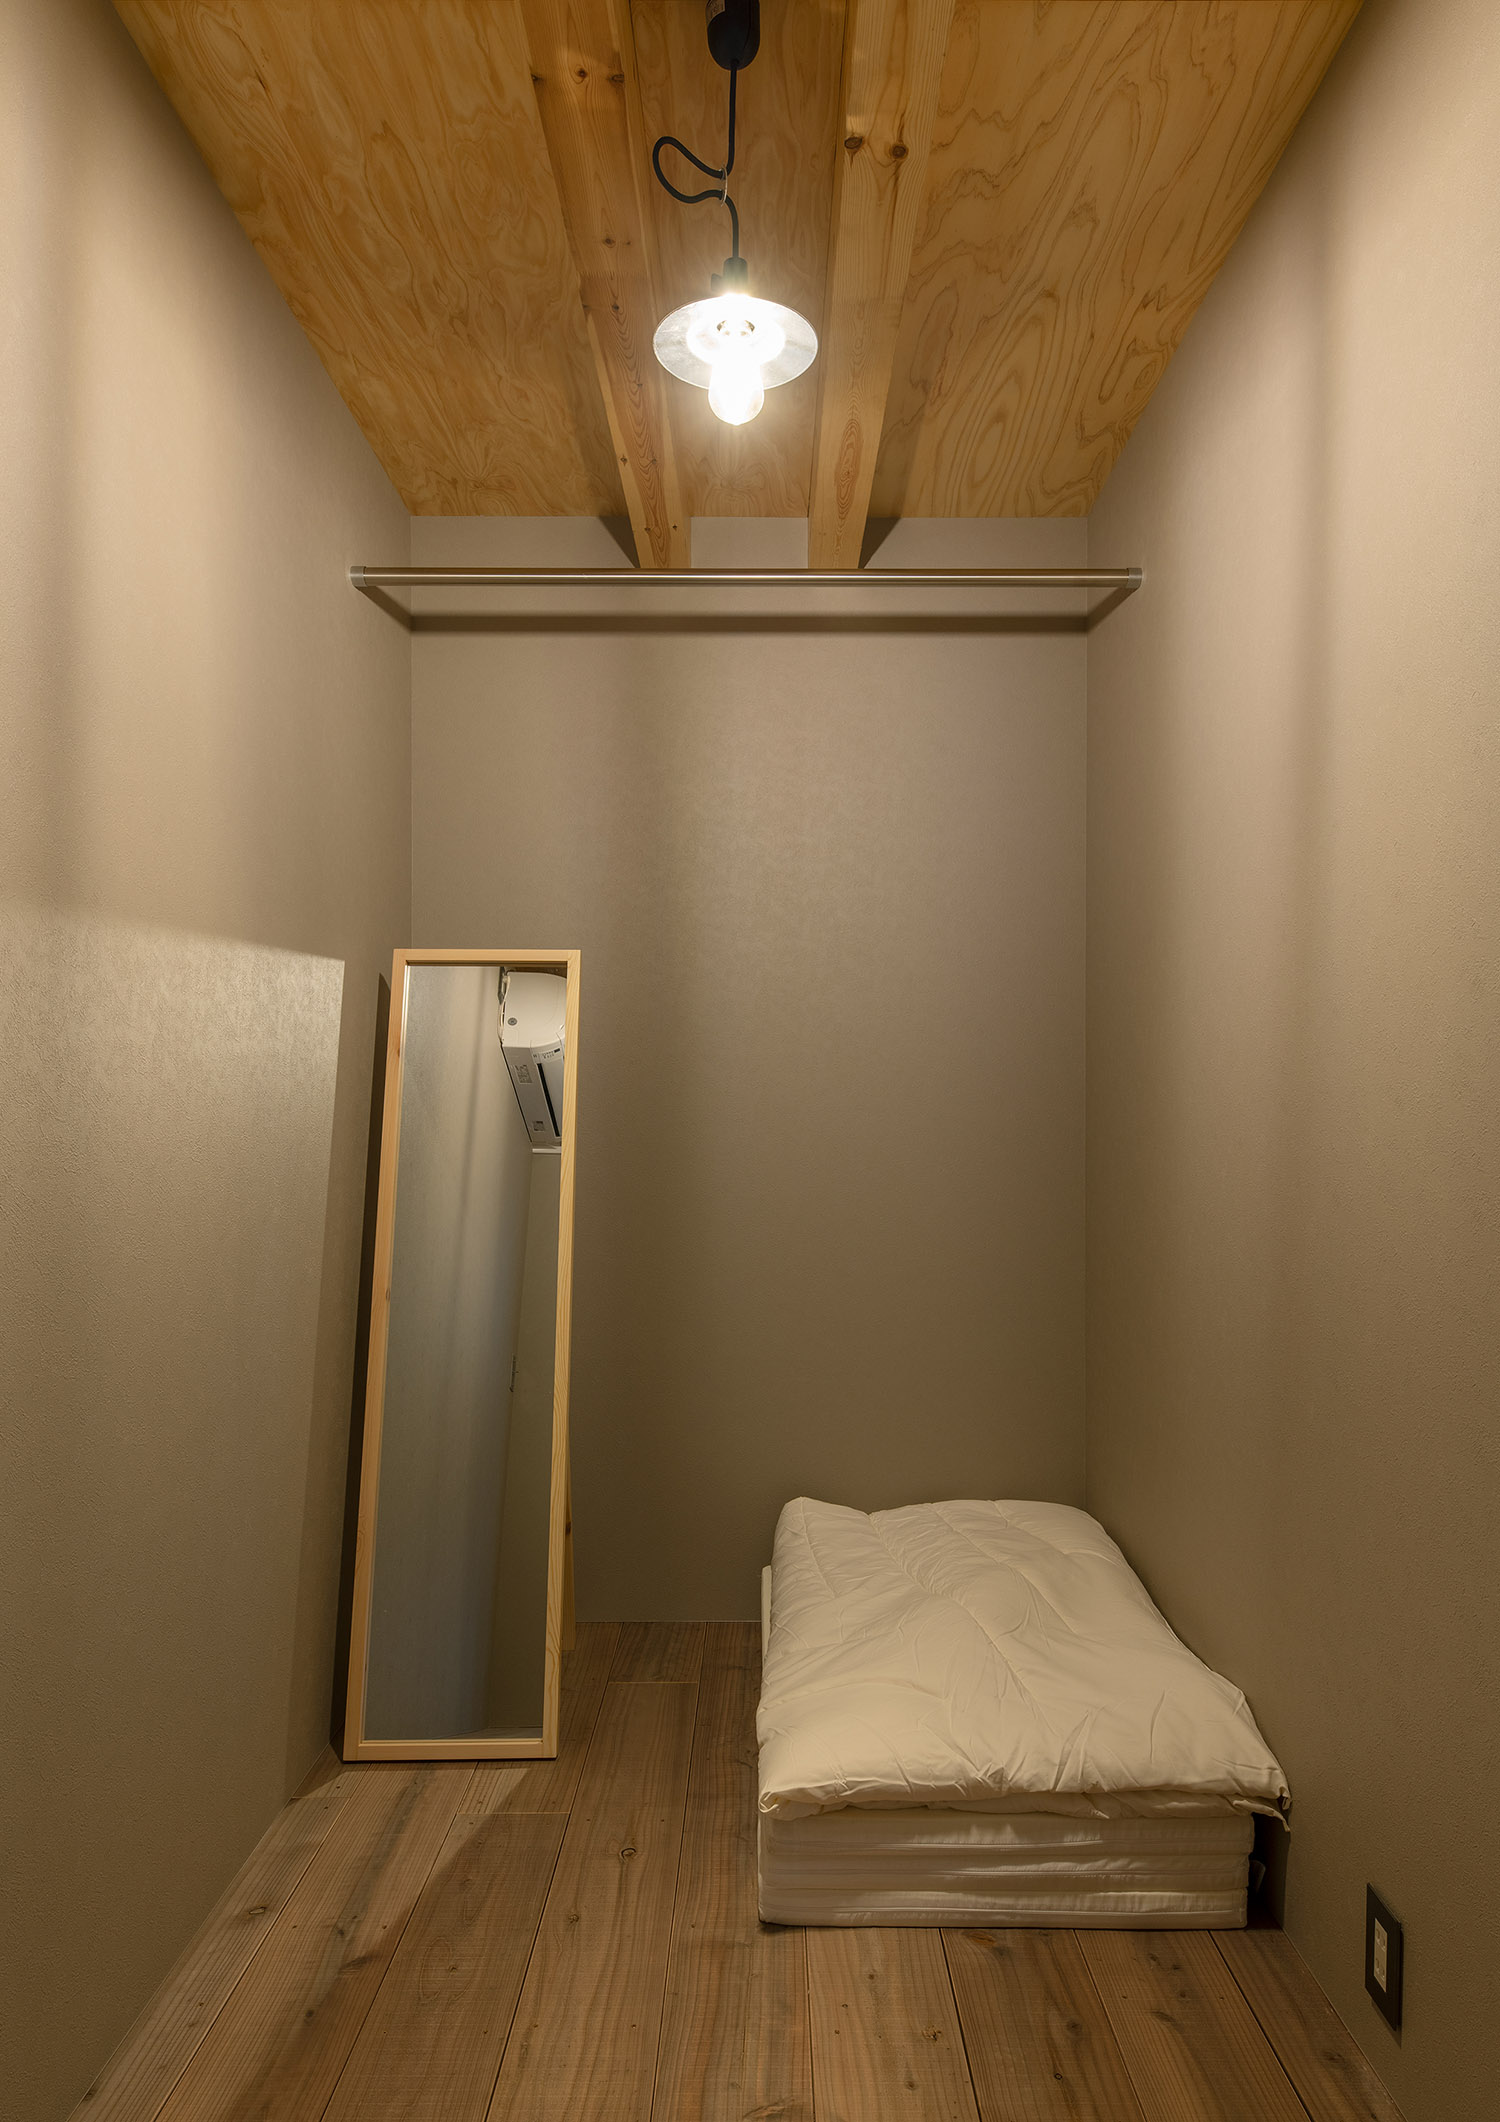 木の天井に布団と鏡を置いたシンプルな寝室・デザイン住宅